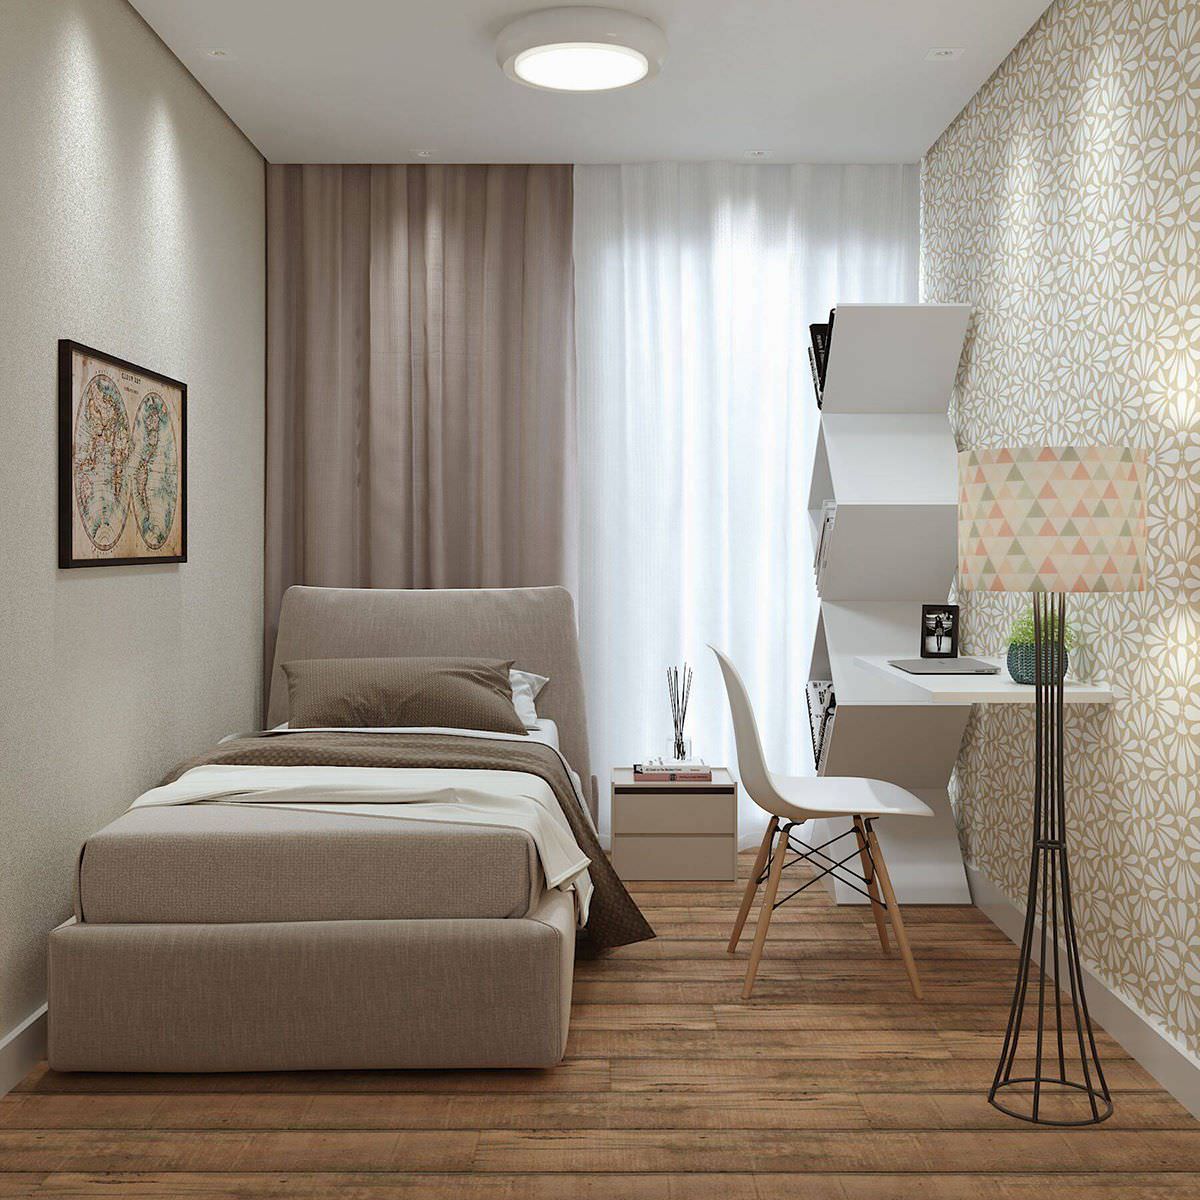 Tông màu kem sang trọng, nội thất đơn giản giúp phòng ngủ nhỏ thêm thông thoáng